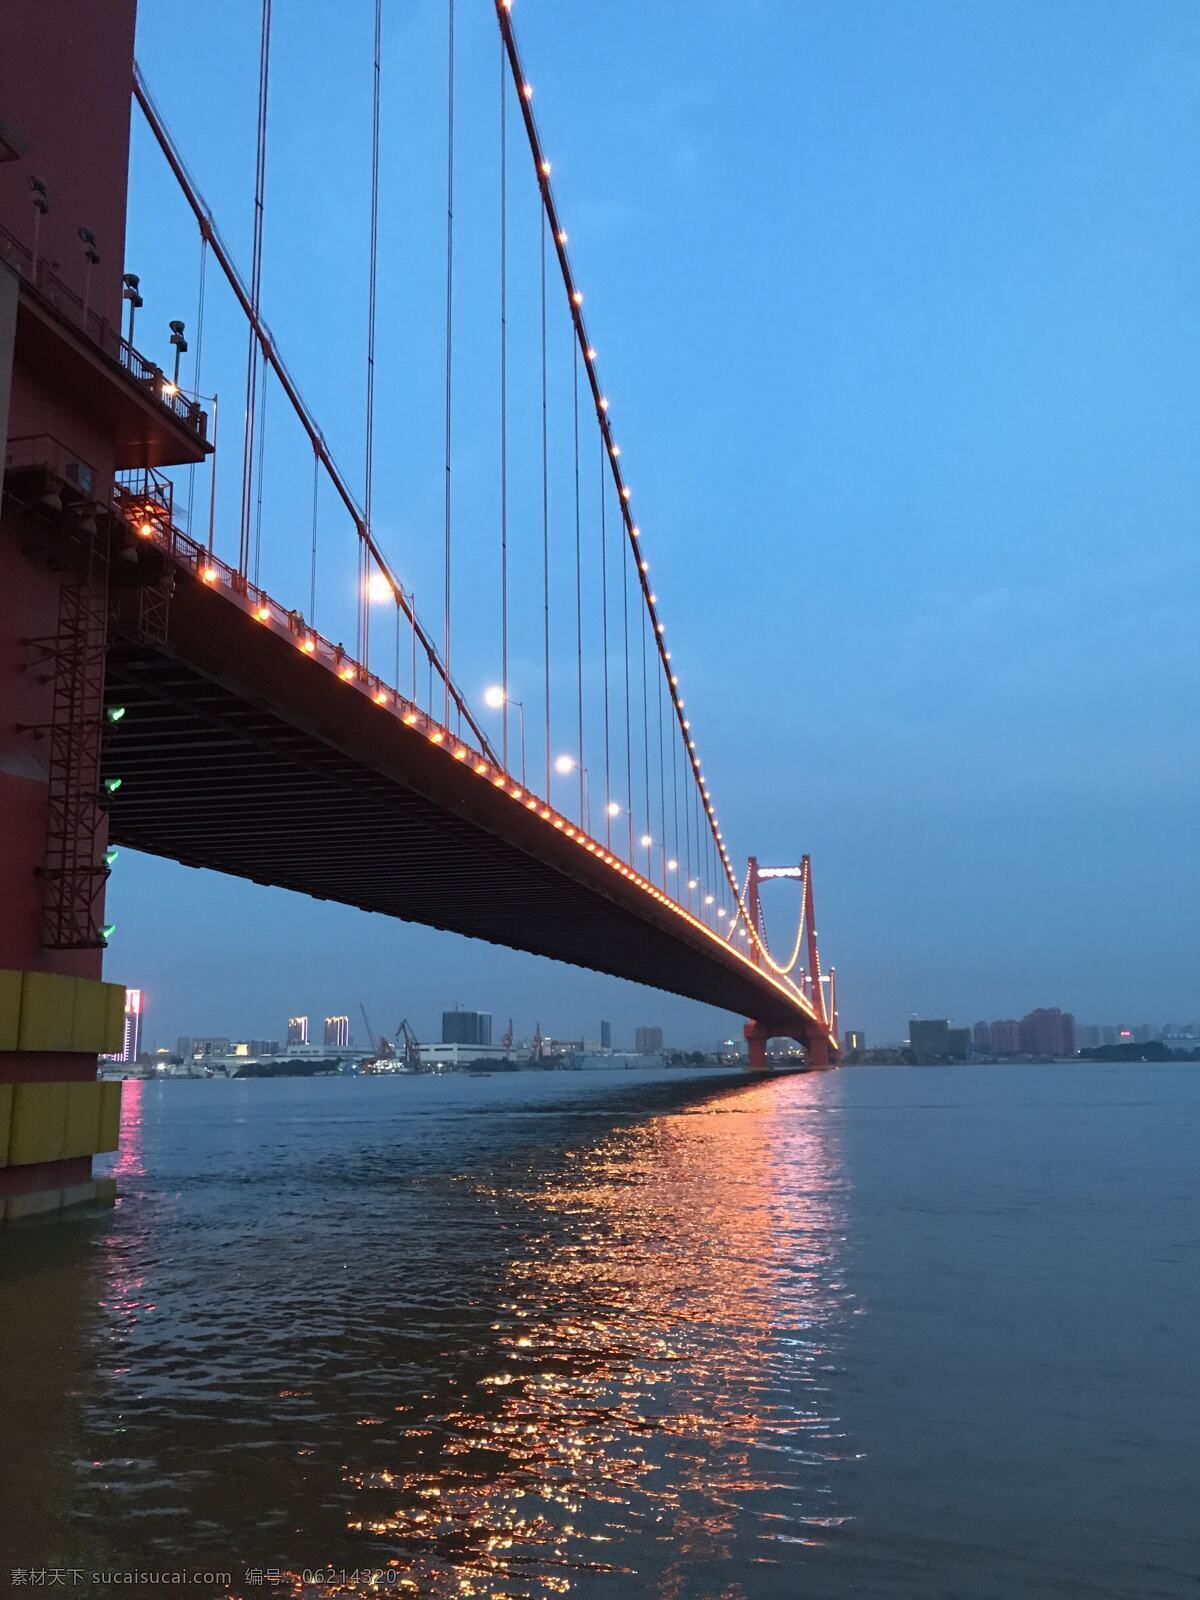 武汉 鹦鹉 洲 大桥 鹦鹉洲大桥 长江 晚上 夜景 灯光 水面 城市 倒影 建筑园林 建筑摄影